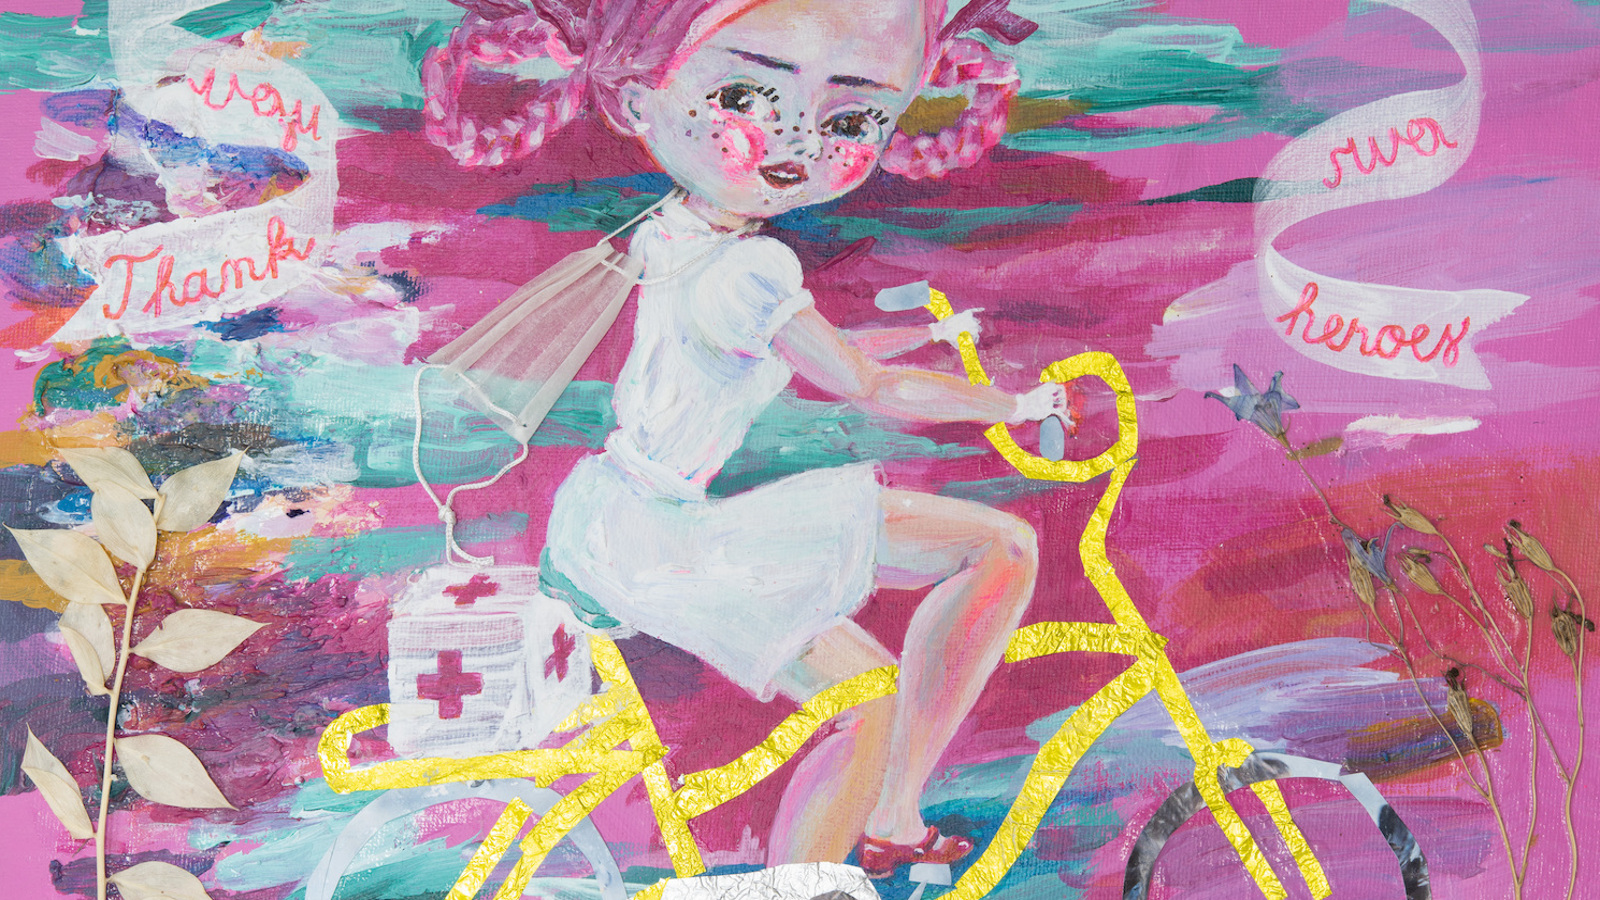 Kuvassa on tyttö pyöräilemässä ja kuvassa kulkee nauhoja, joissa lukee Thank you our heroes. Värit ovat pastellin sävyisiä.